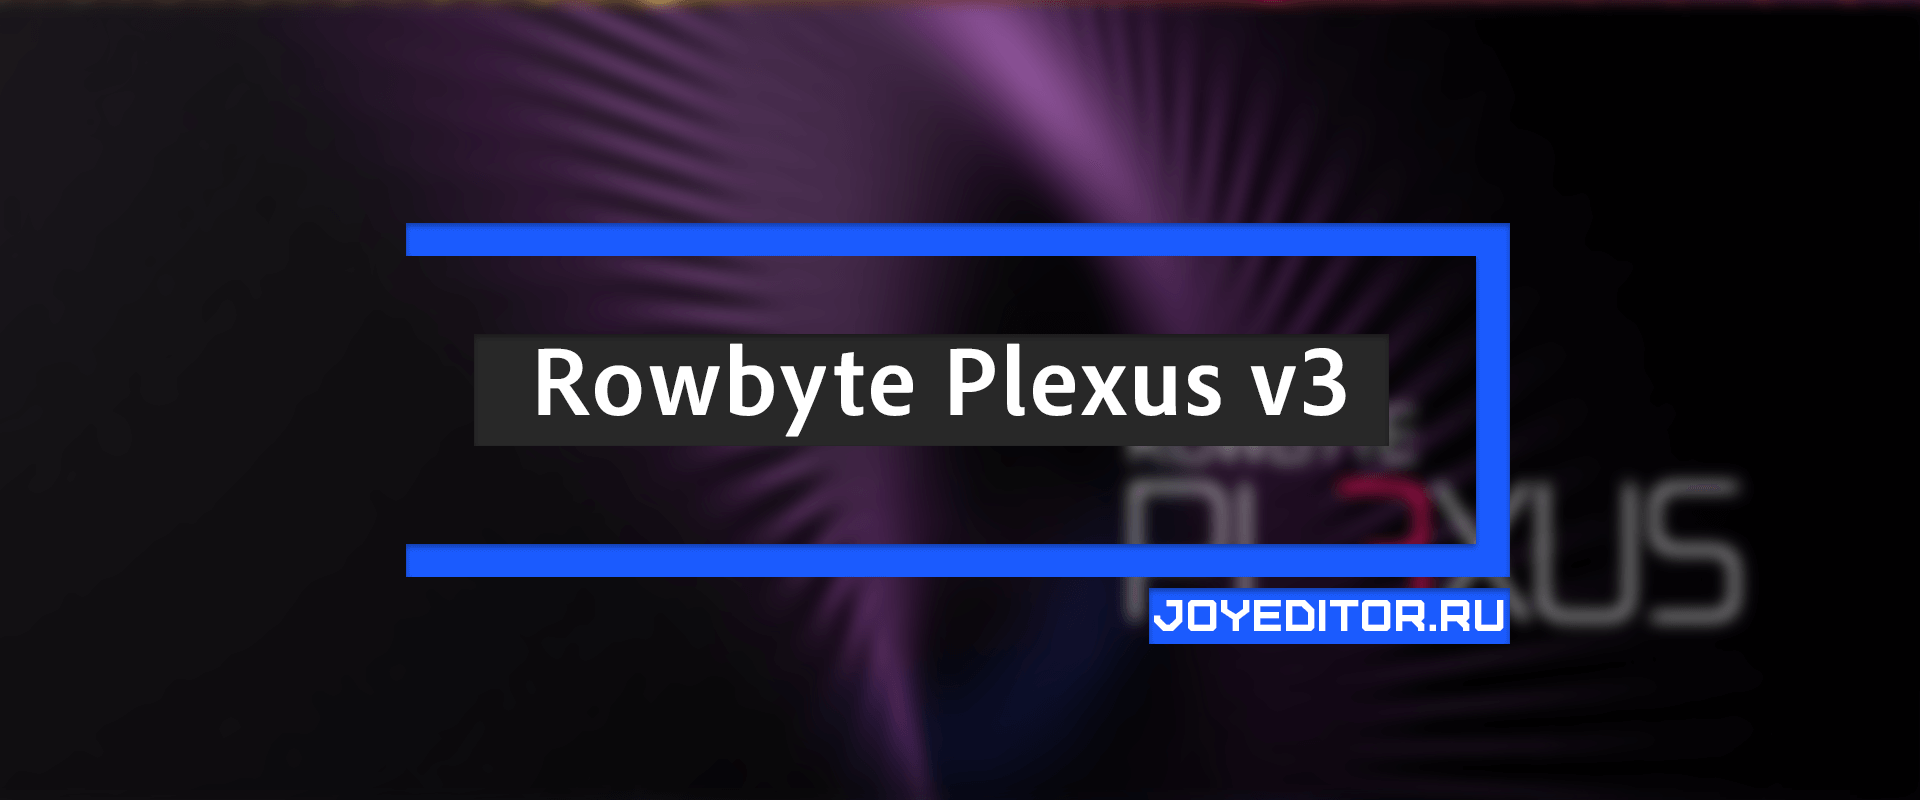 Rowbyte Plexus v3